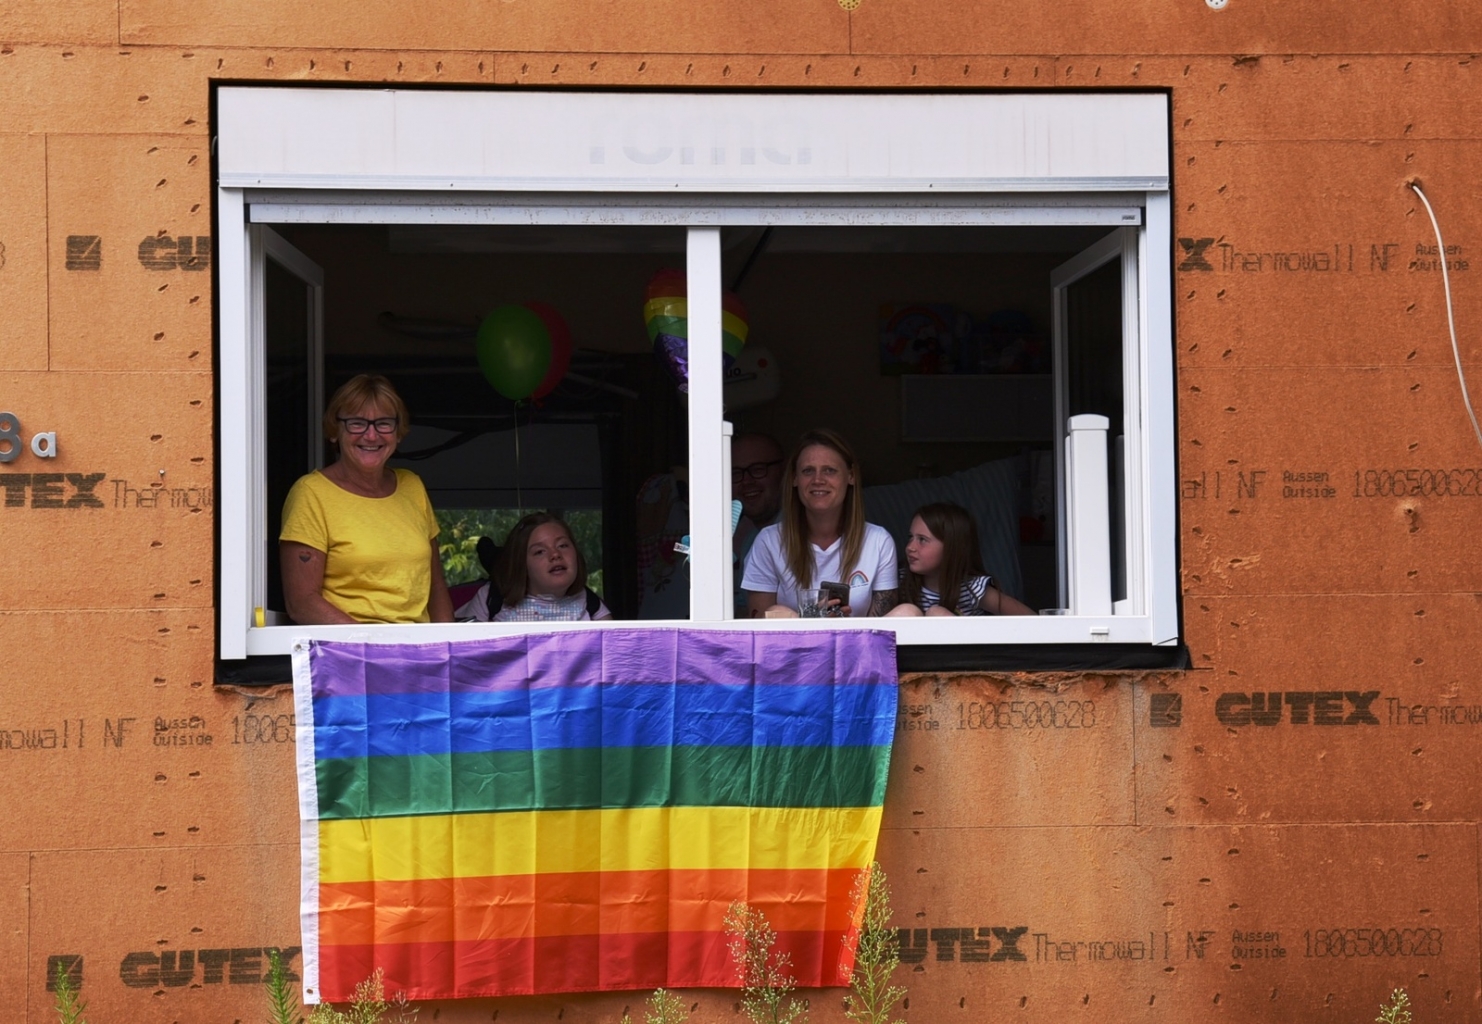 Manche Anwohner*innen haben eine Regenbogenflagge aus dem Fenster gehängt.